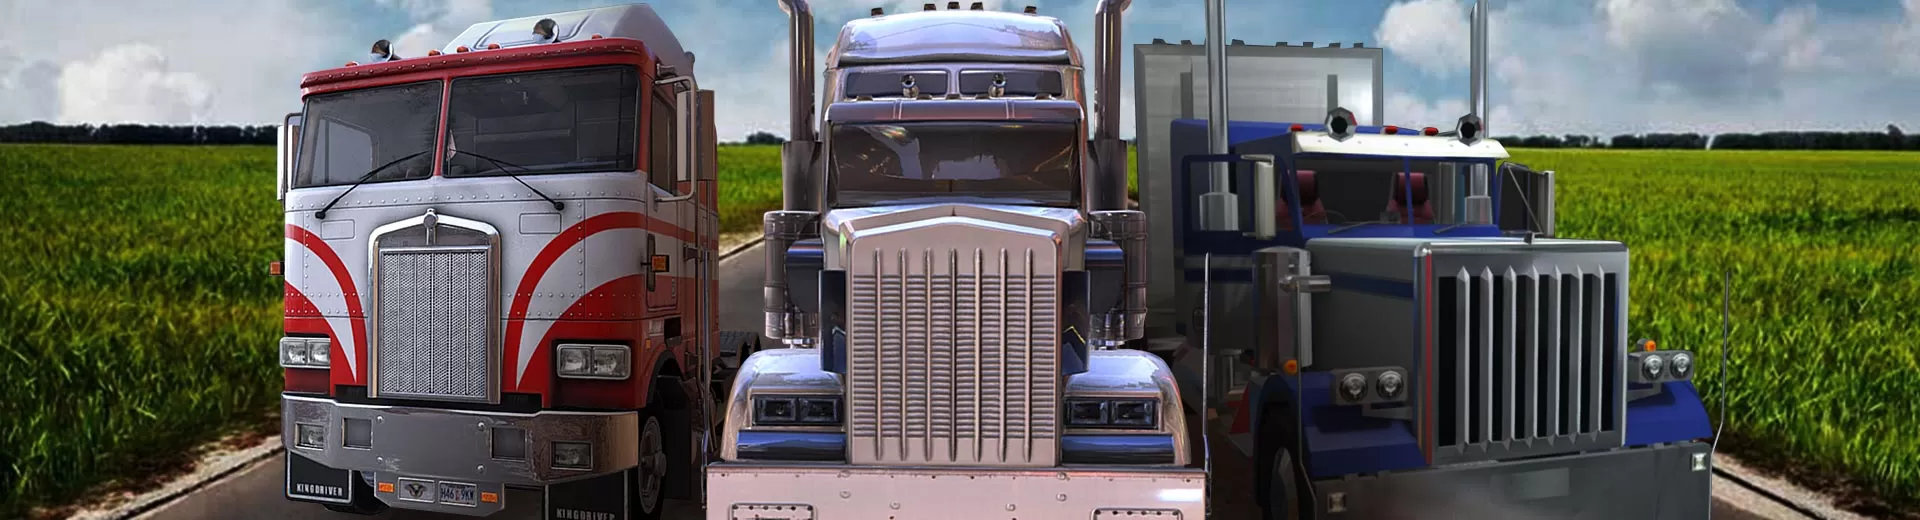 Truckem All Emulator Pc